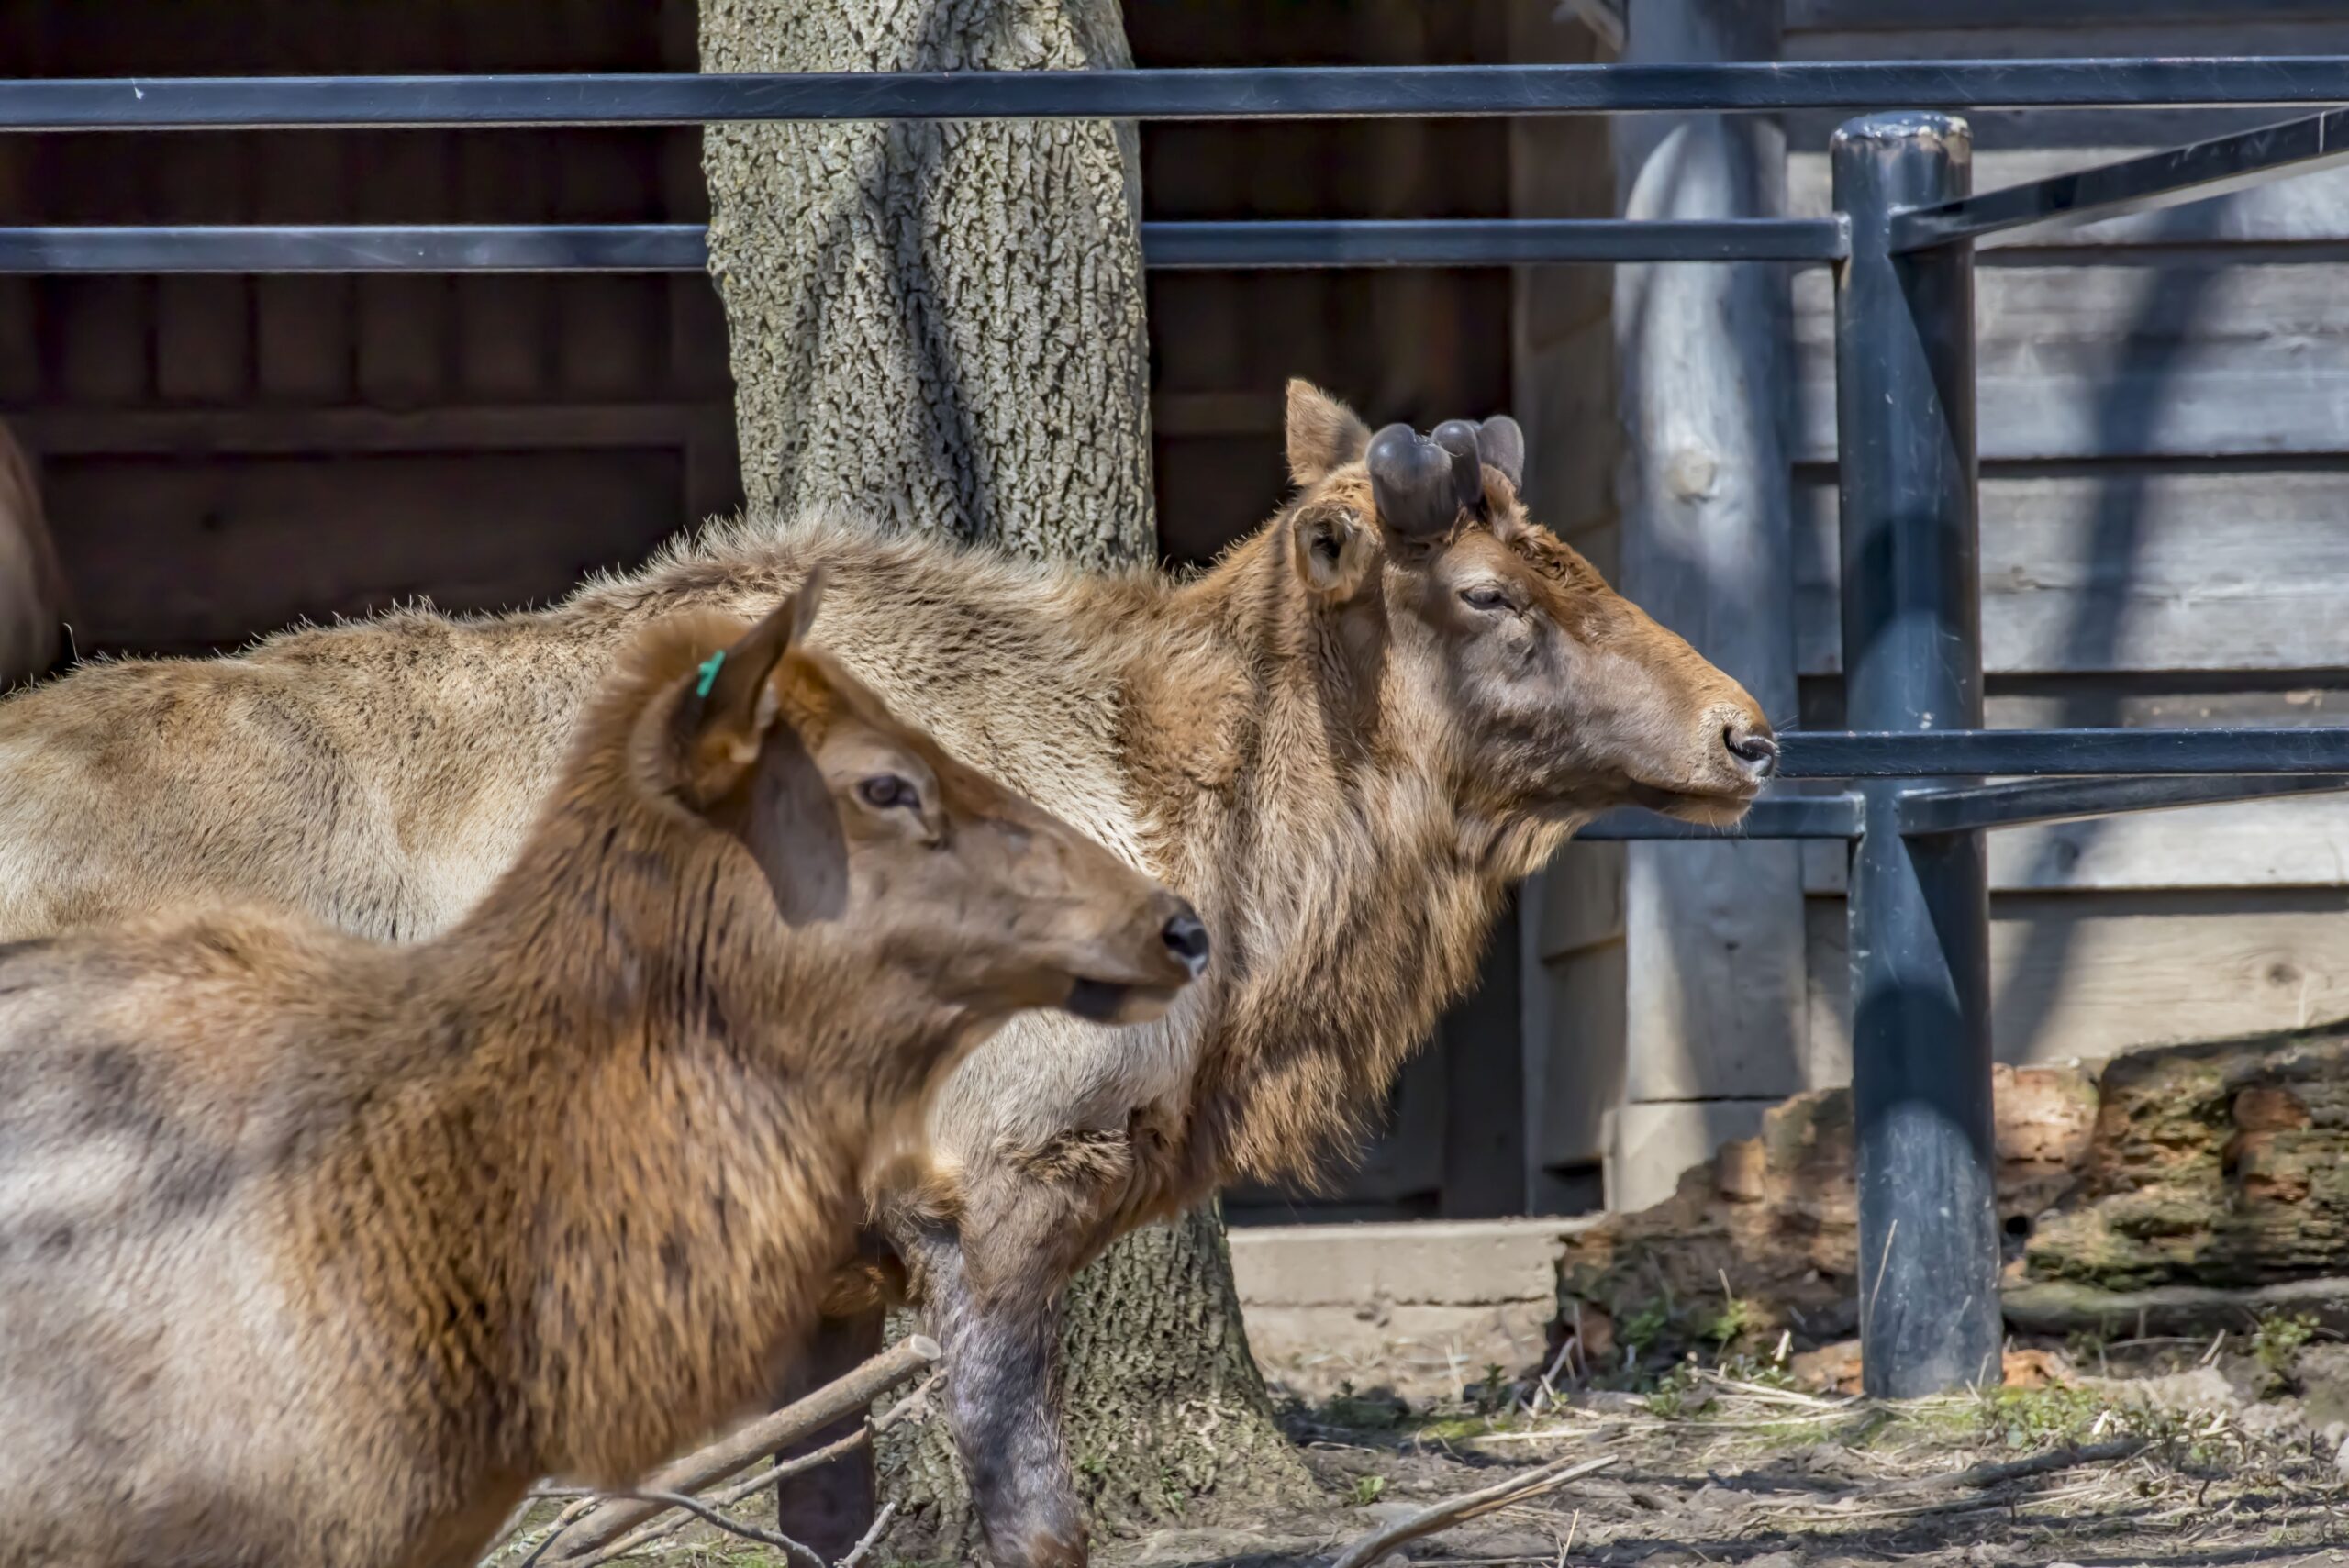 Comanche elk at zoo